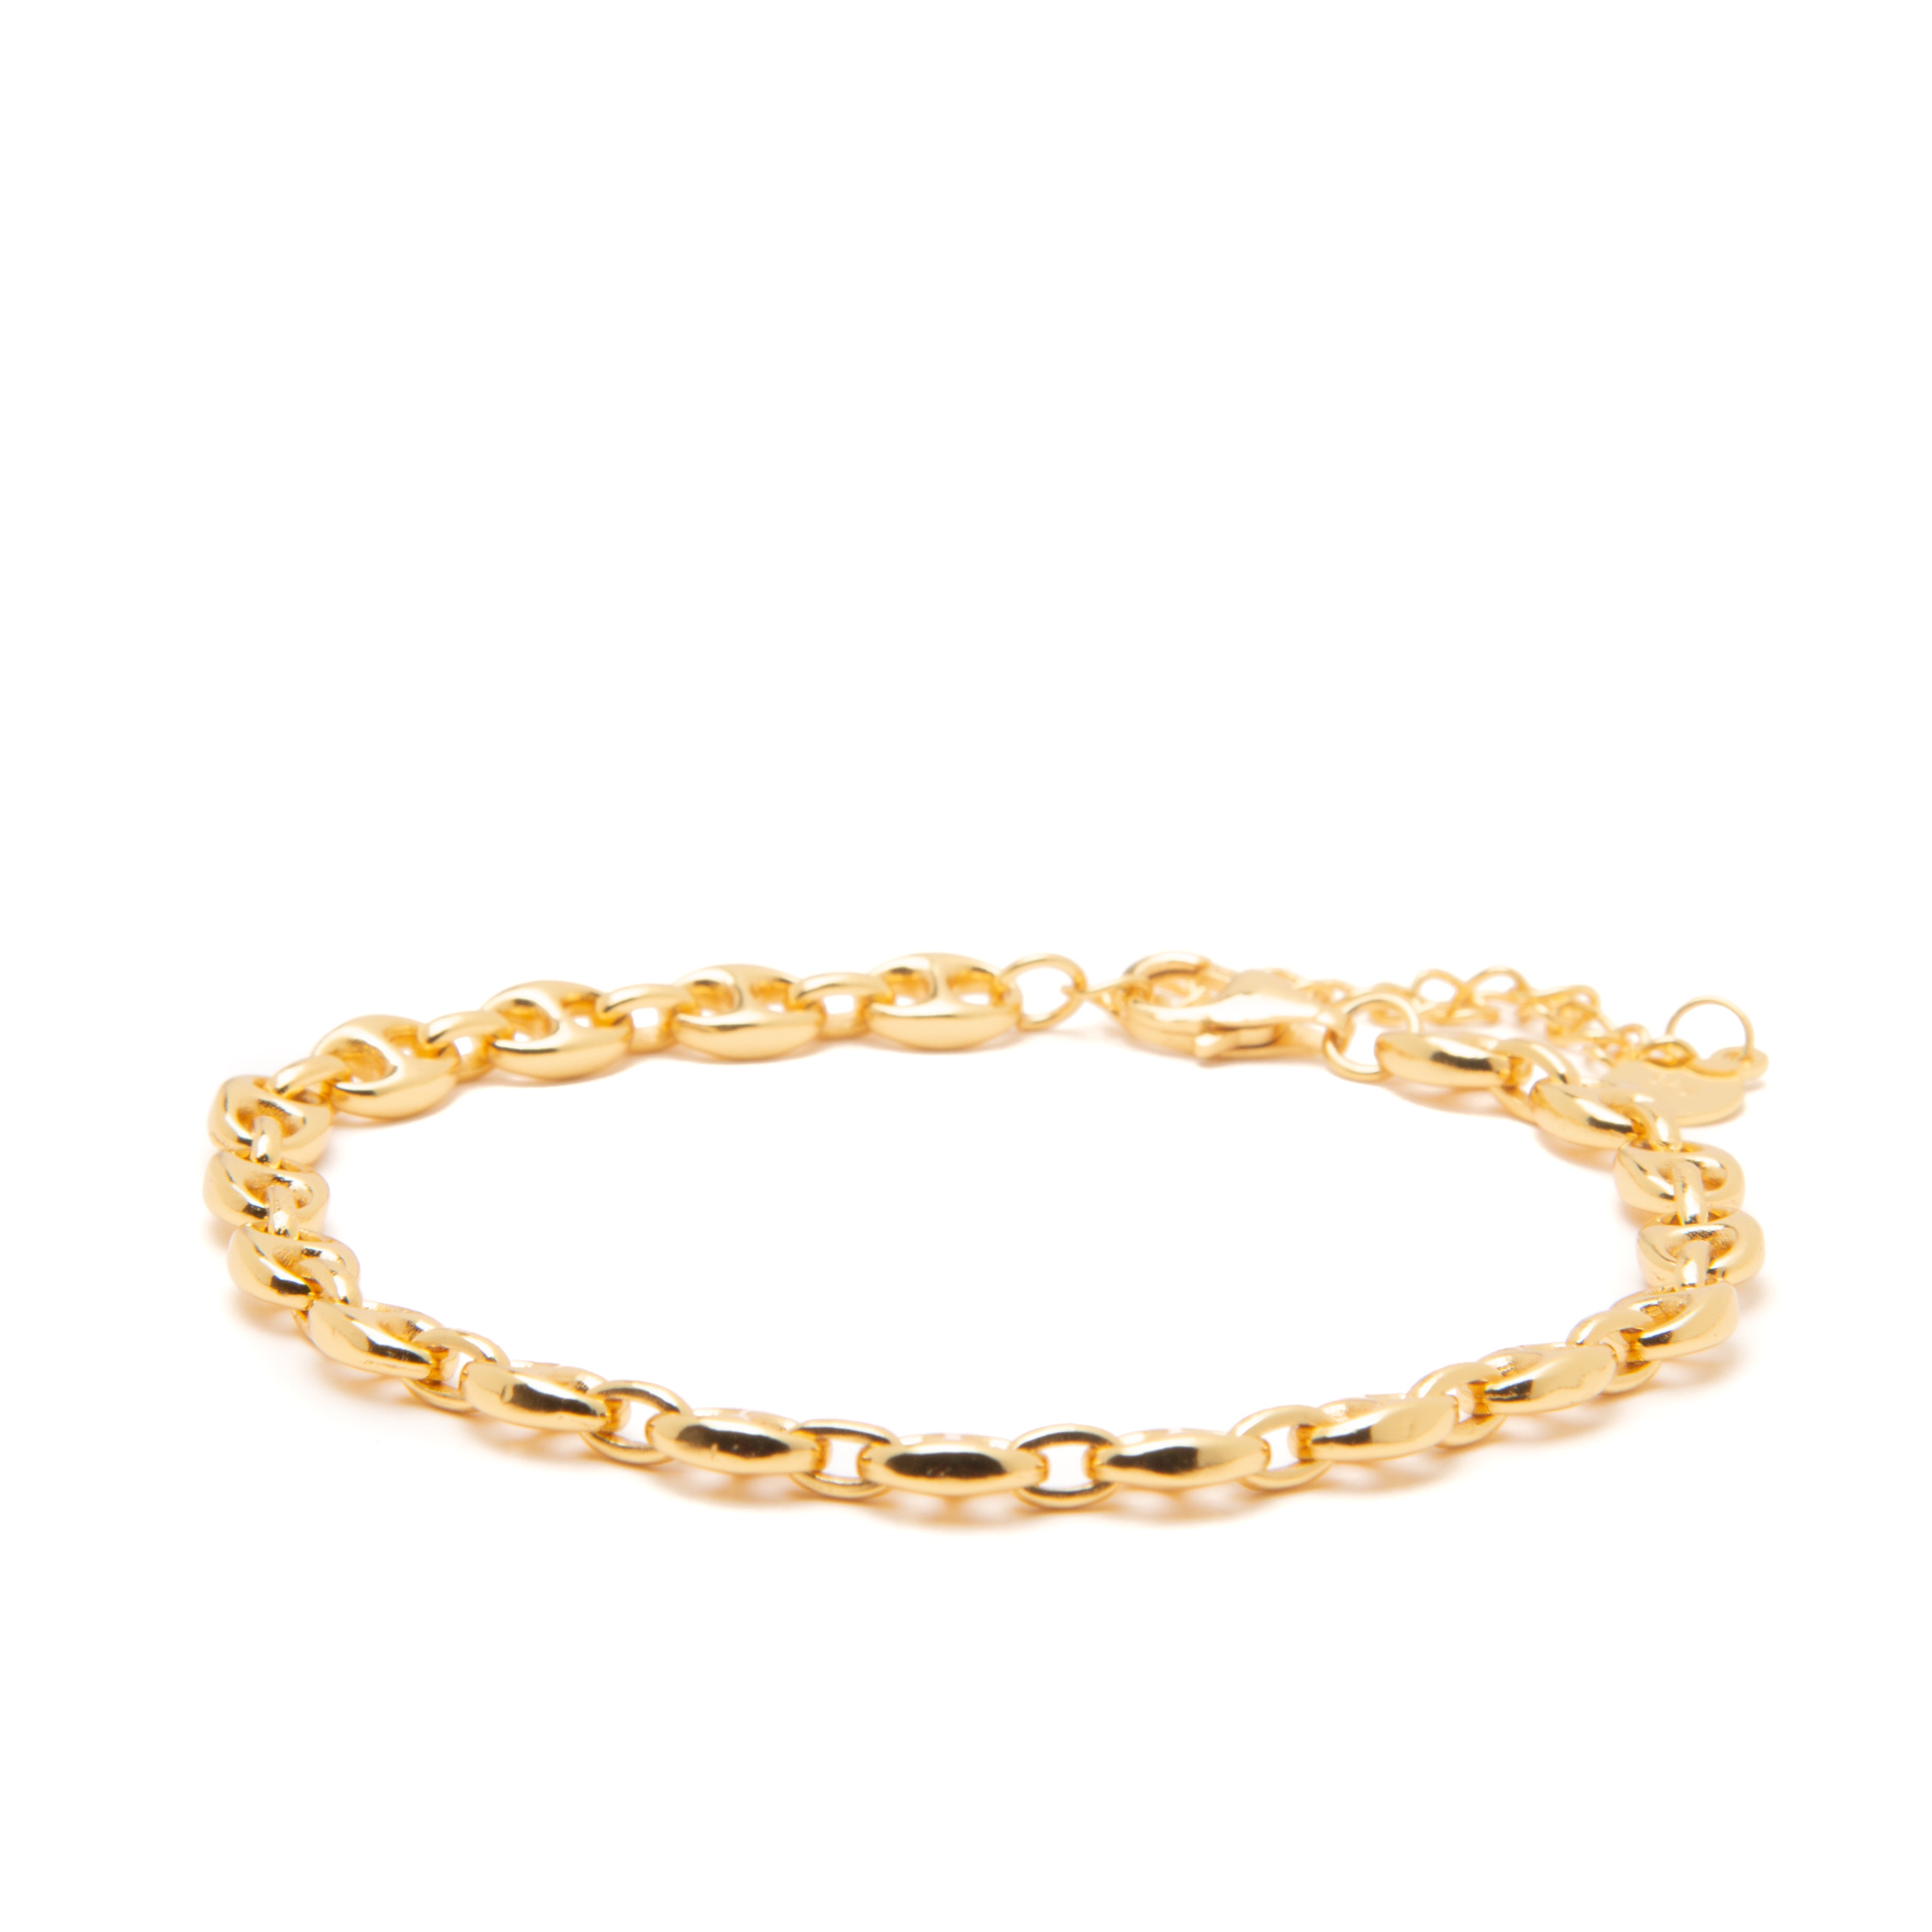 Charlie gold bracelet